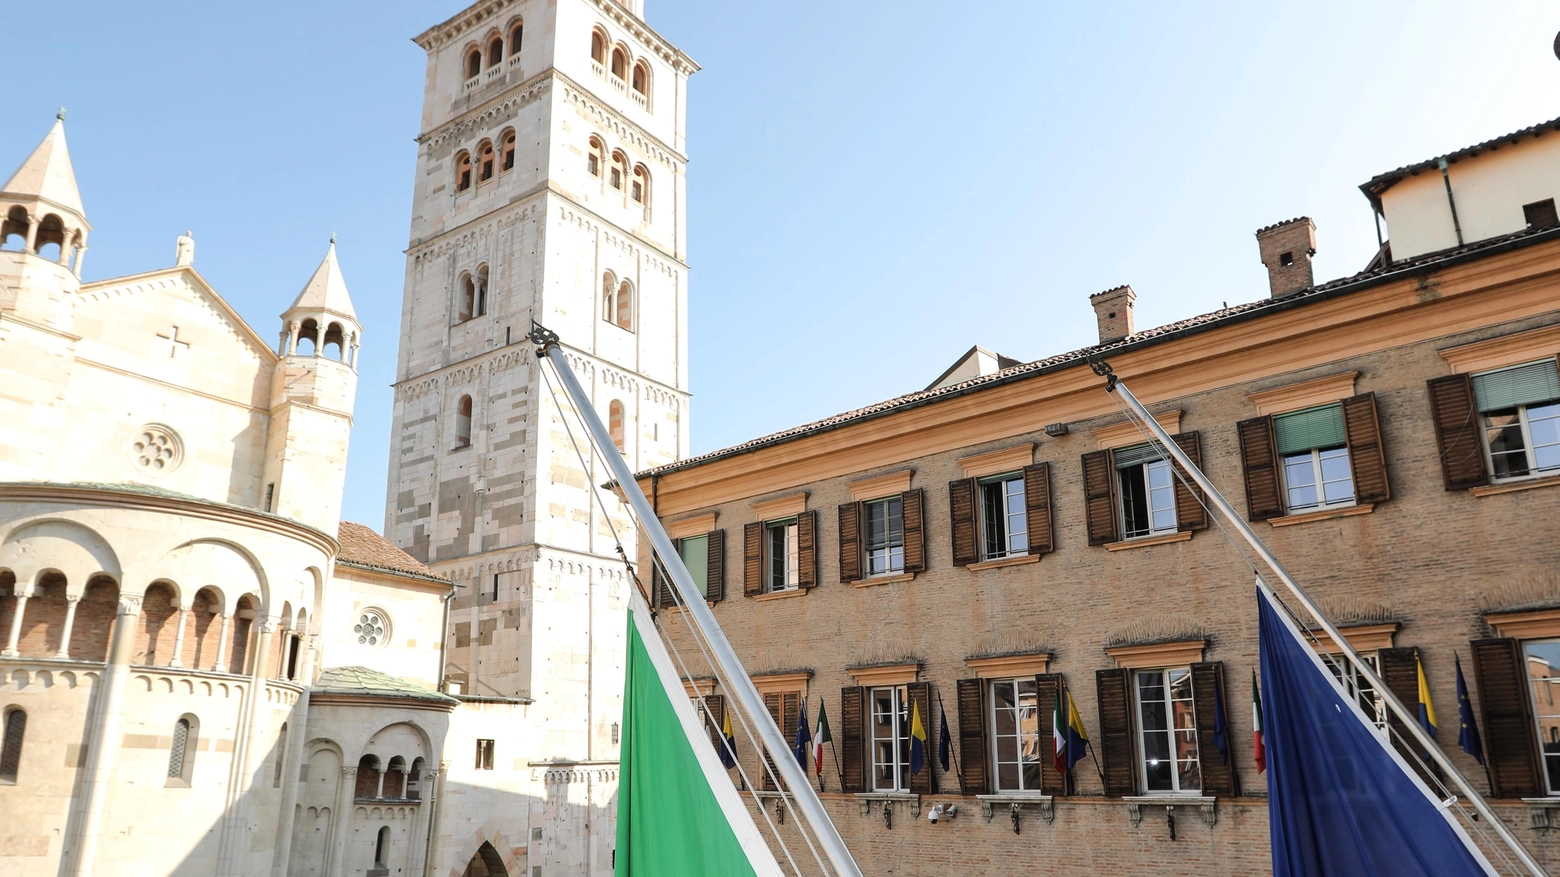 L’estate del sito Unesco  Aperitivi in torre e visite  per accogliere i turisti